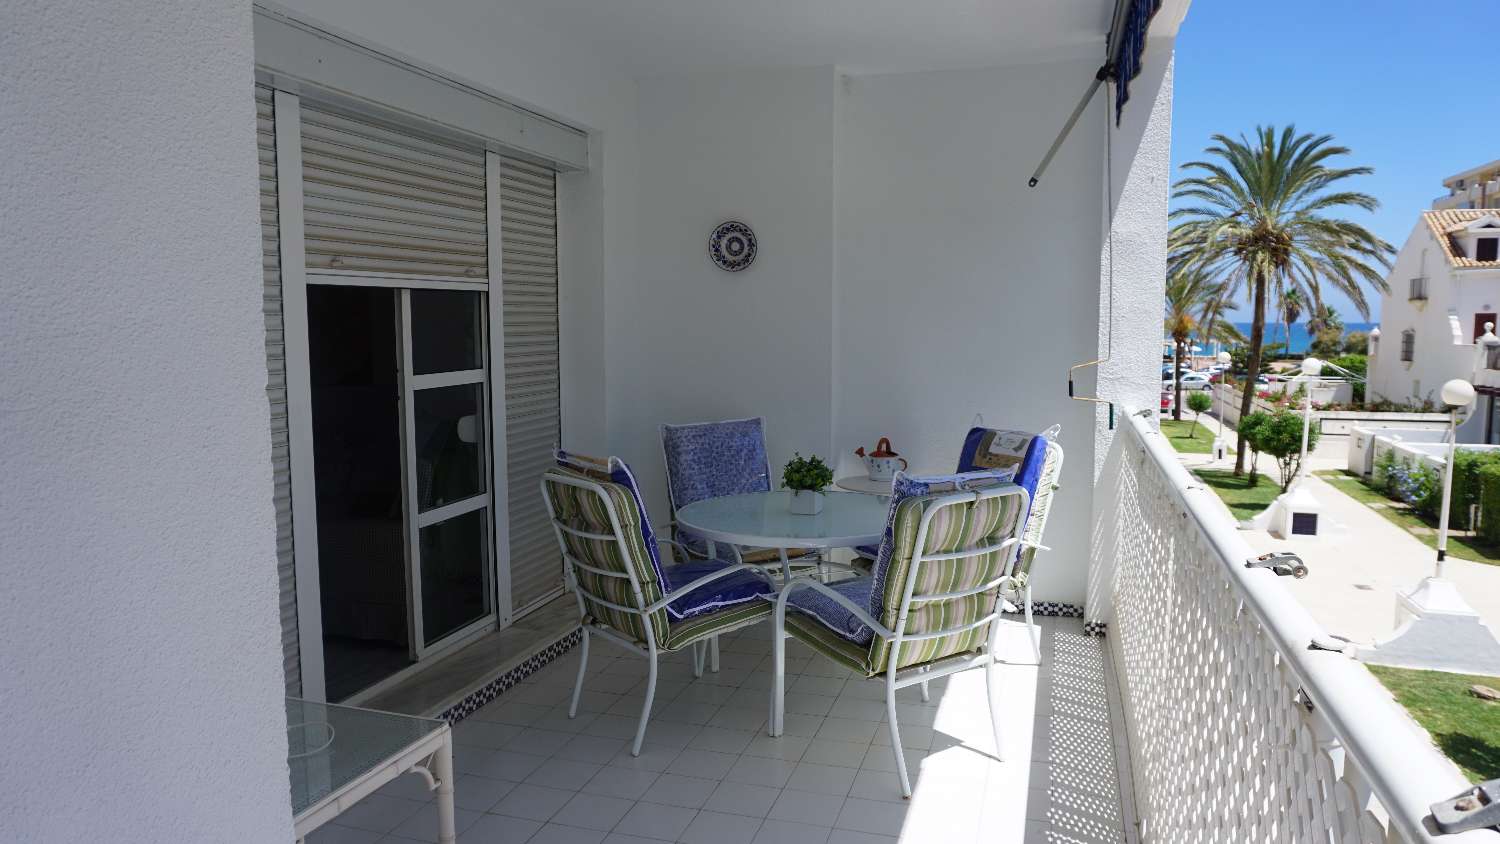 Appartamento imbattibile sulla spiaggia, 3 camere da letto, super attrezzato, piscina, wi-fi, Fuengirola